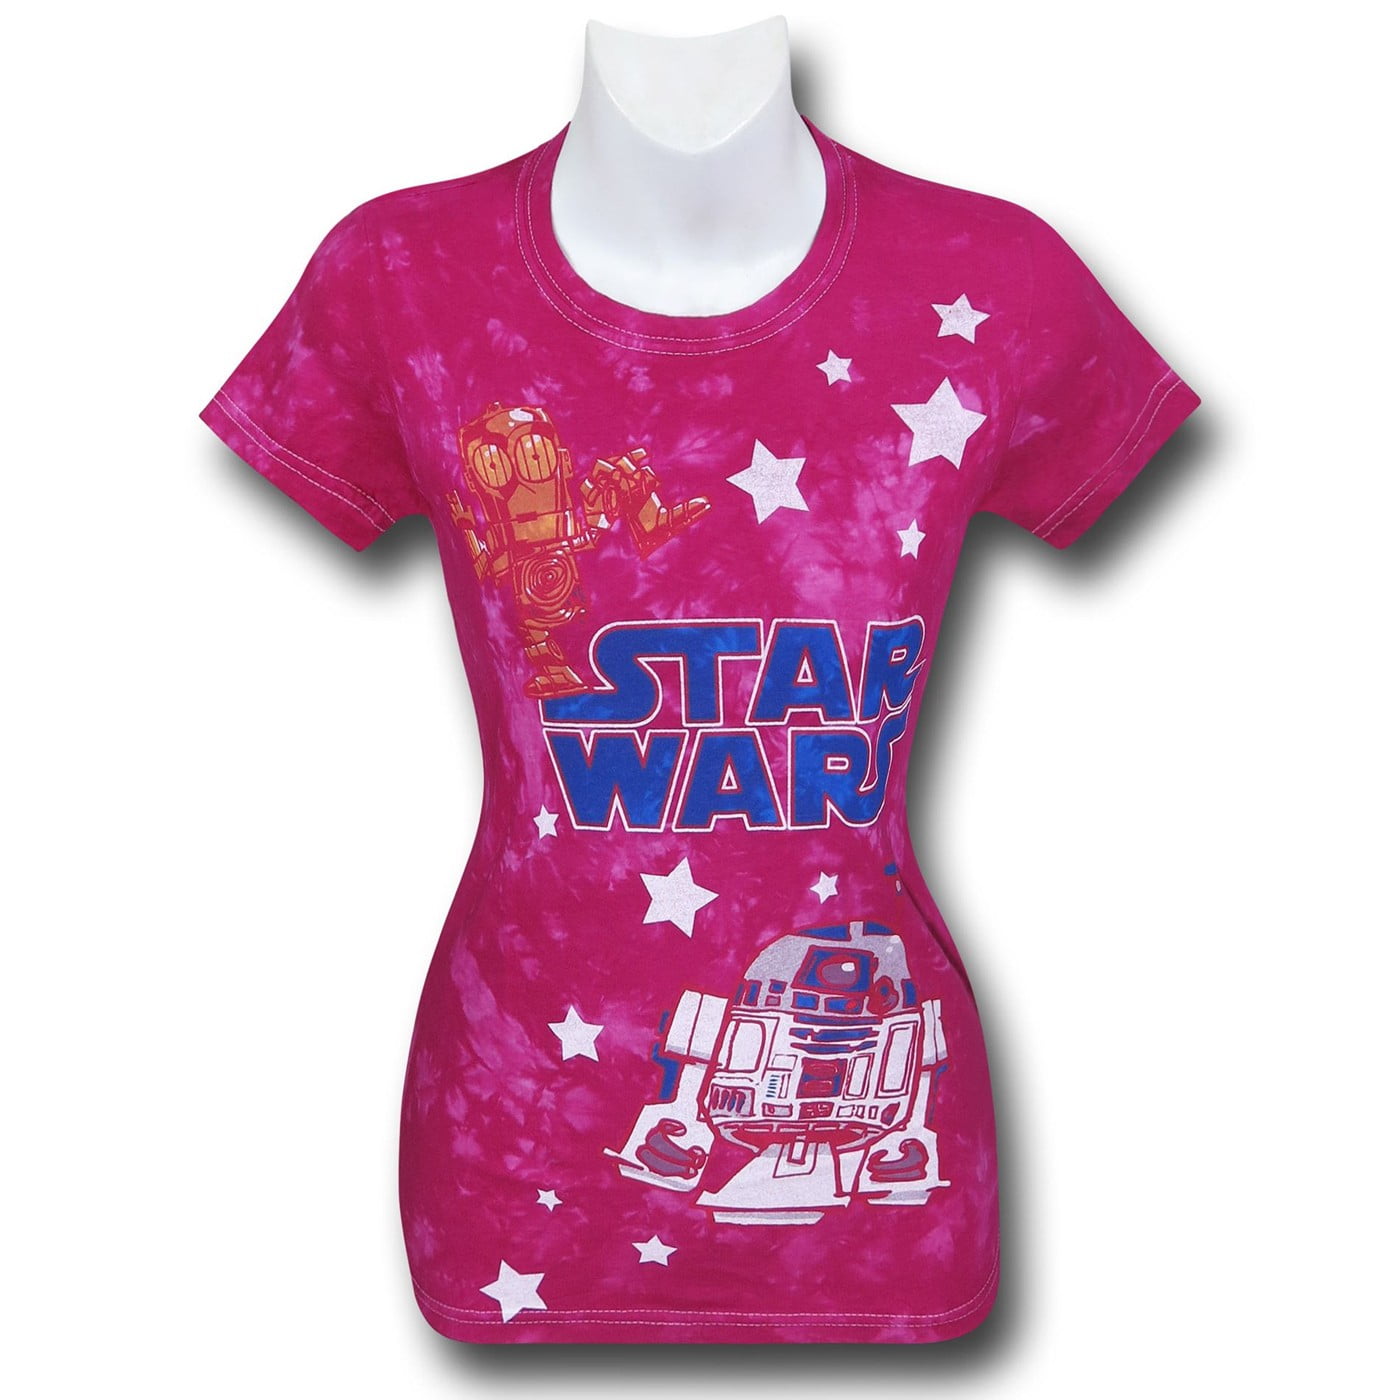 STAR WARS Ladies Fashion Shirt Ladies Tie Dye T-Shirt